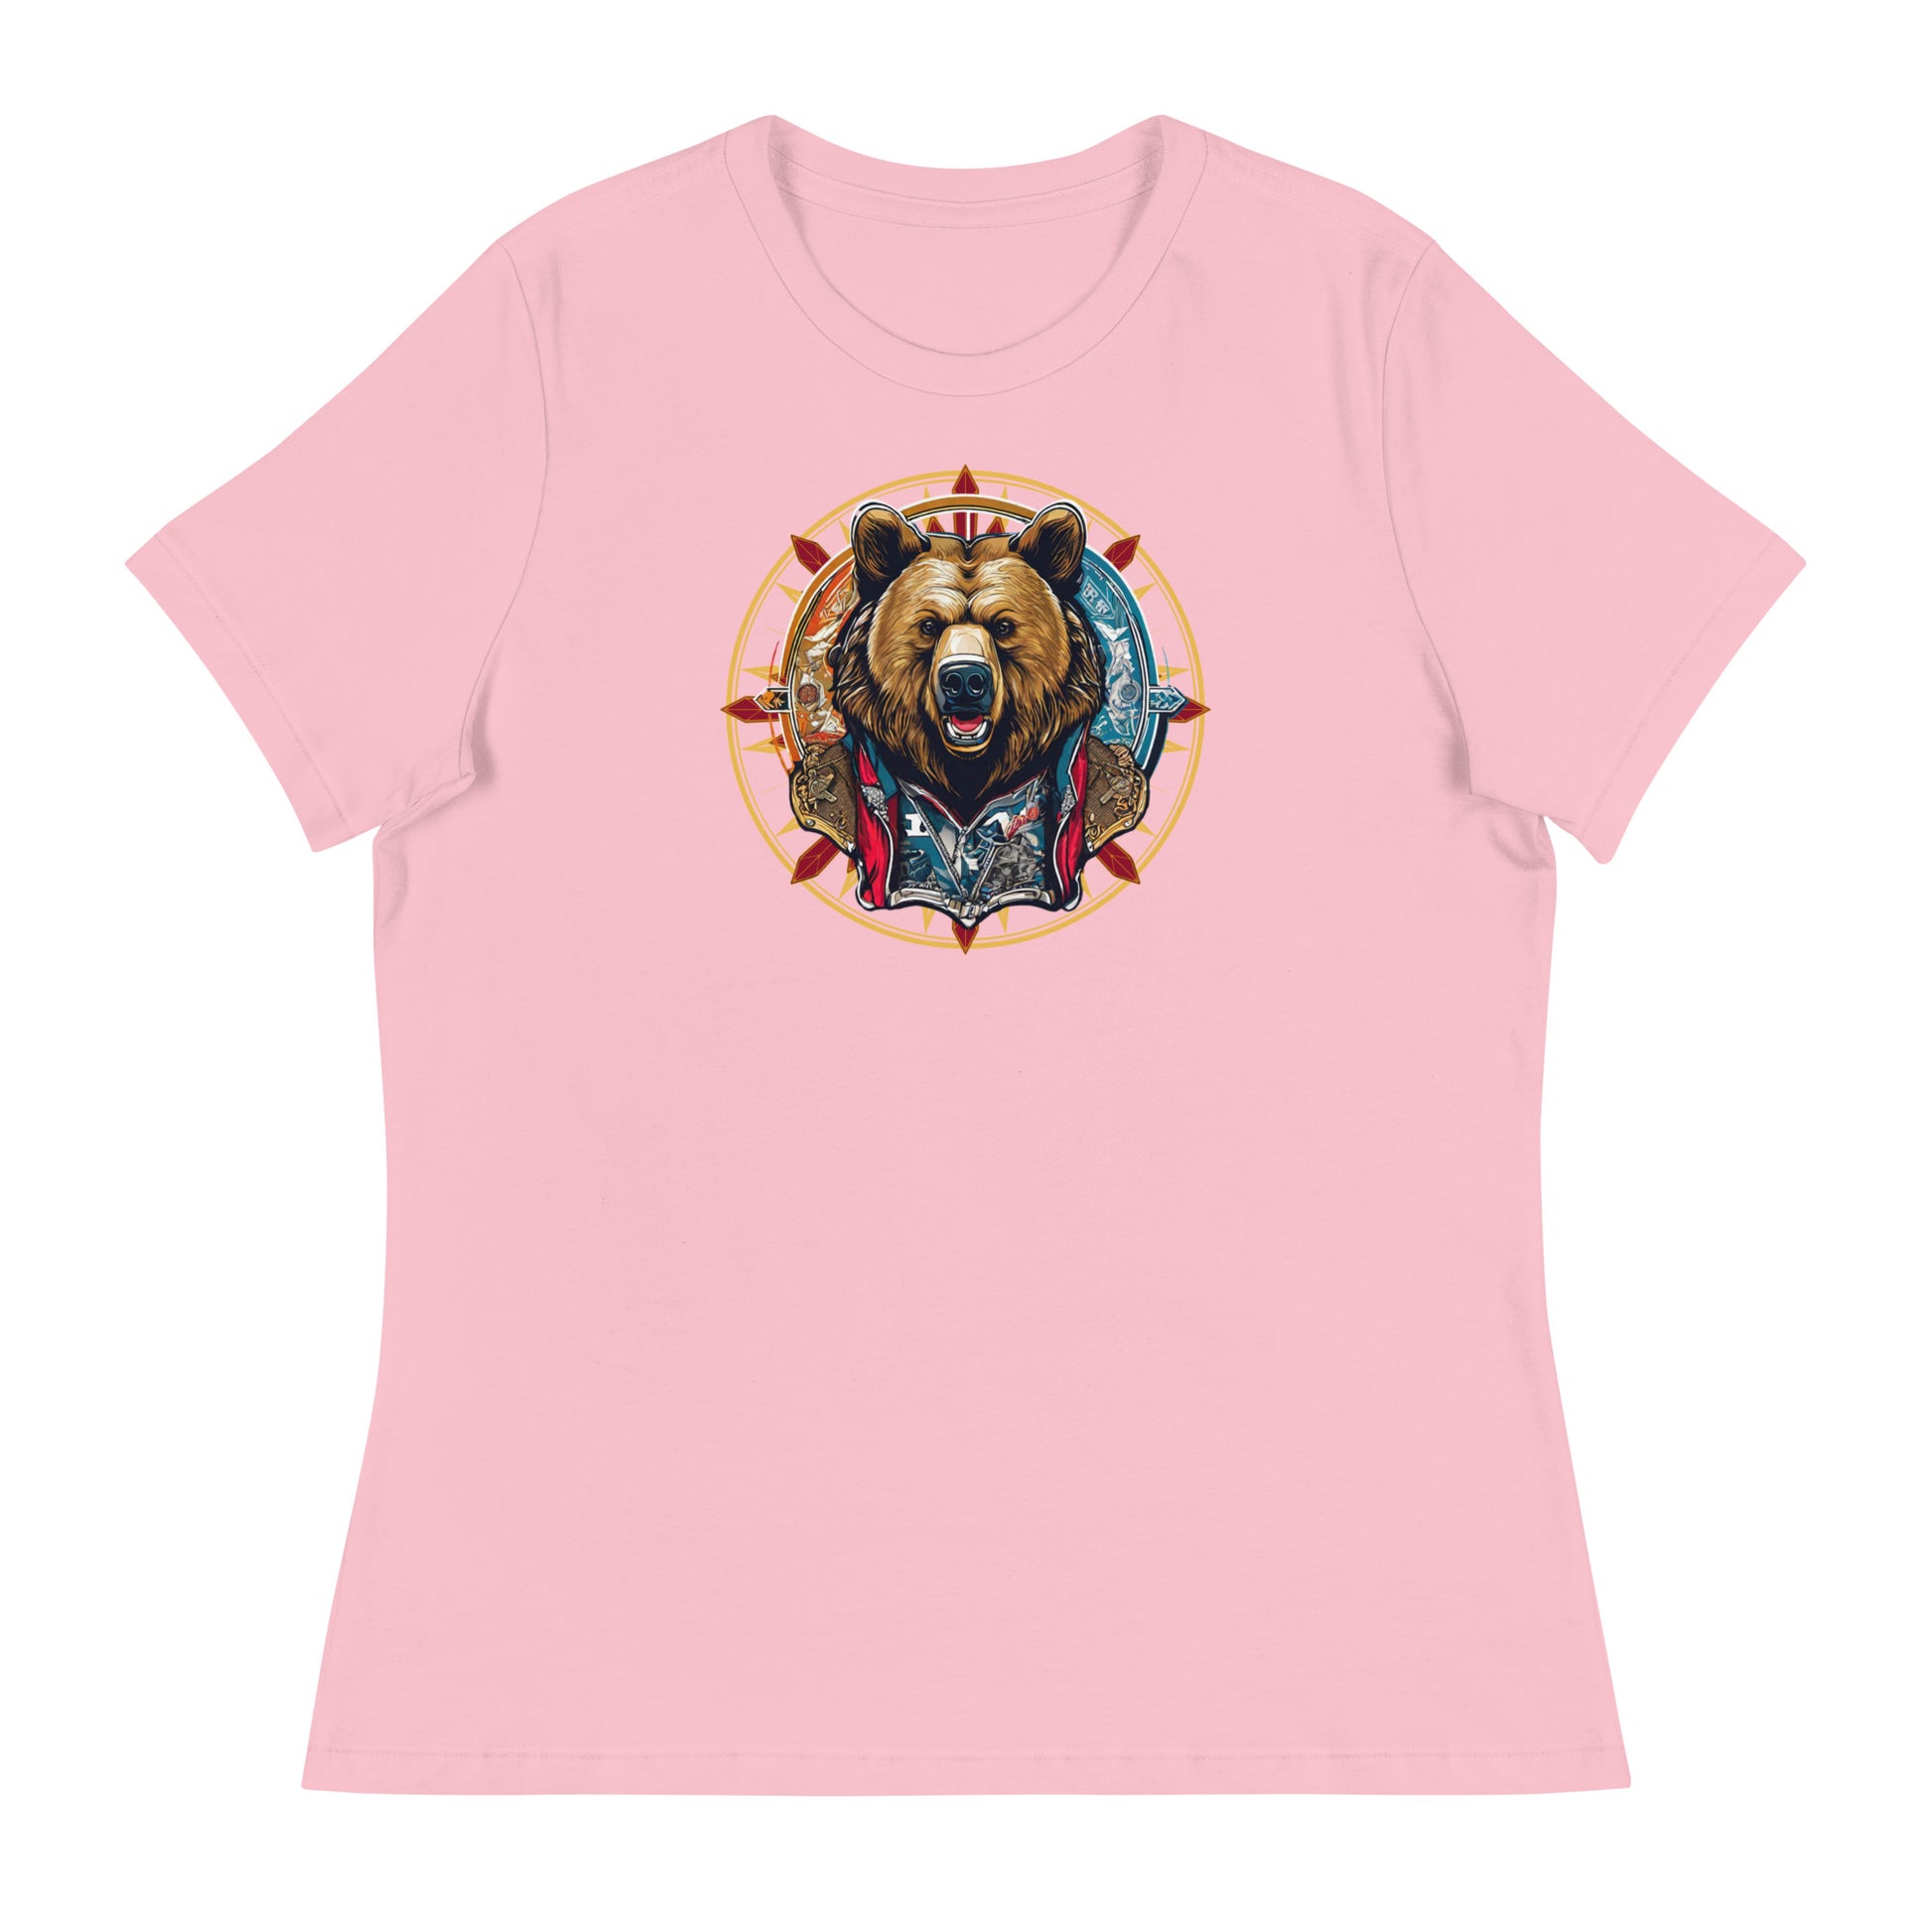 Bear Emblem Women's Graphic T-Shirt Pink